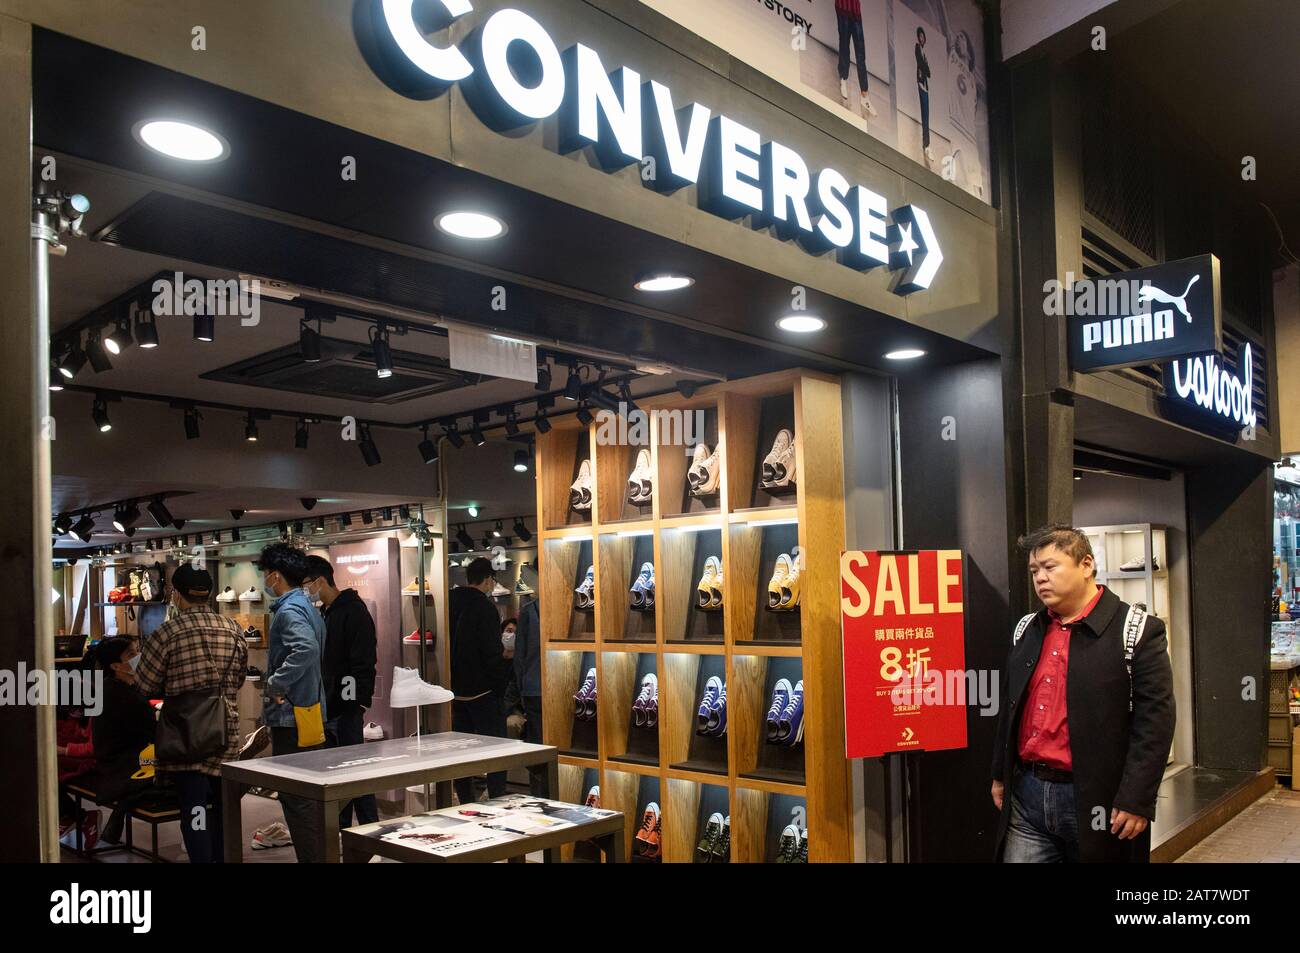 Agarrar Tutor Inmuebles Tienda Converse de la Marca American Shoe en Hong Kong Fotografía de stock  - Alamy